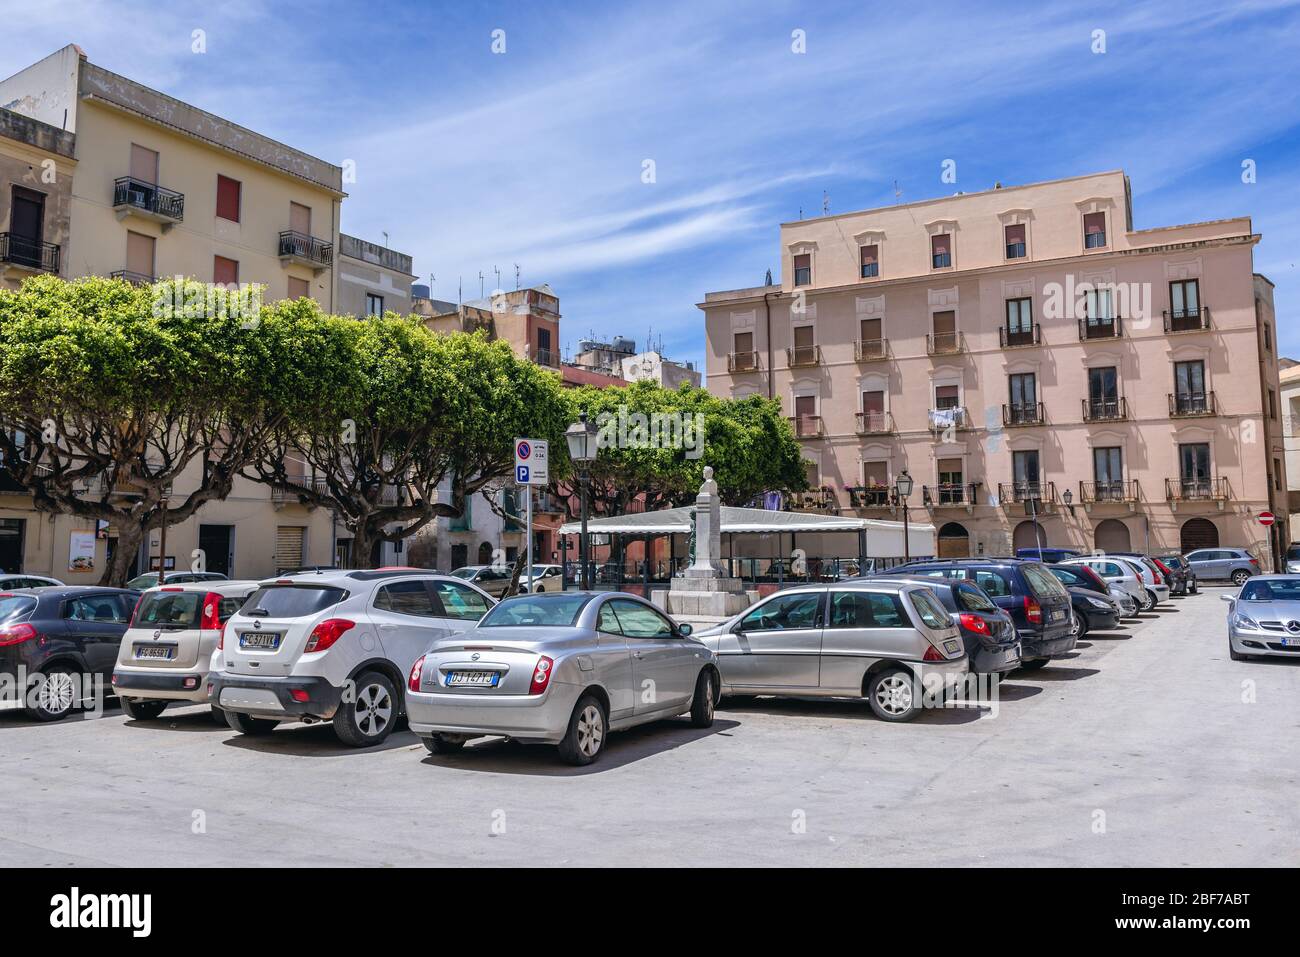 Piazza Principessa Jolanda - piccola piazza nella parte storica della città  di Trapani sulla costa occidentale della Sicilia in Italia Foto stock -  Alamy